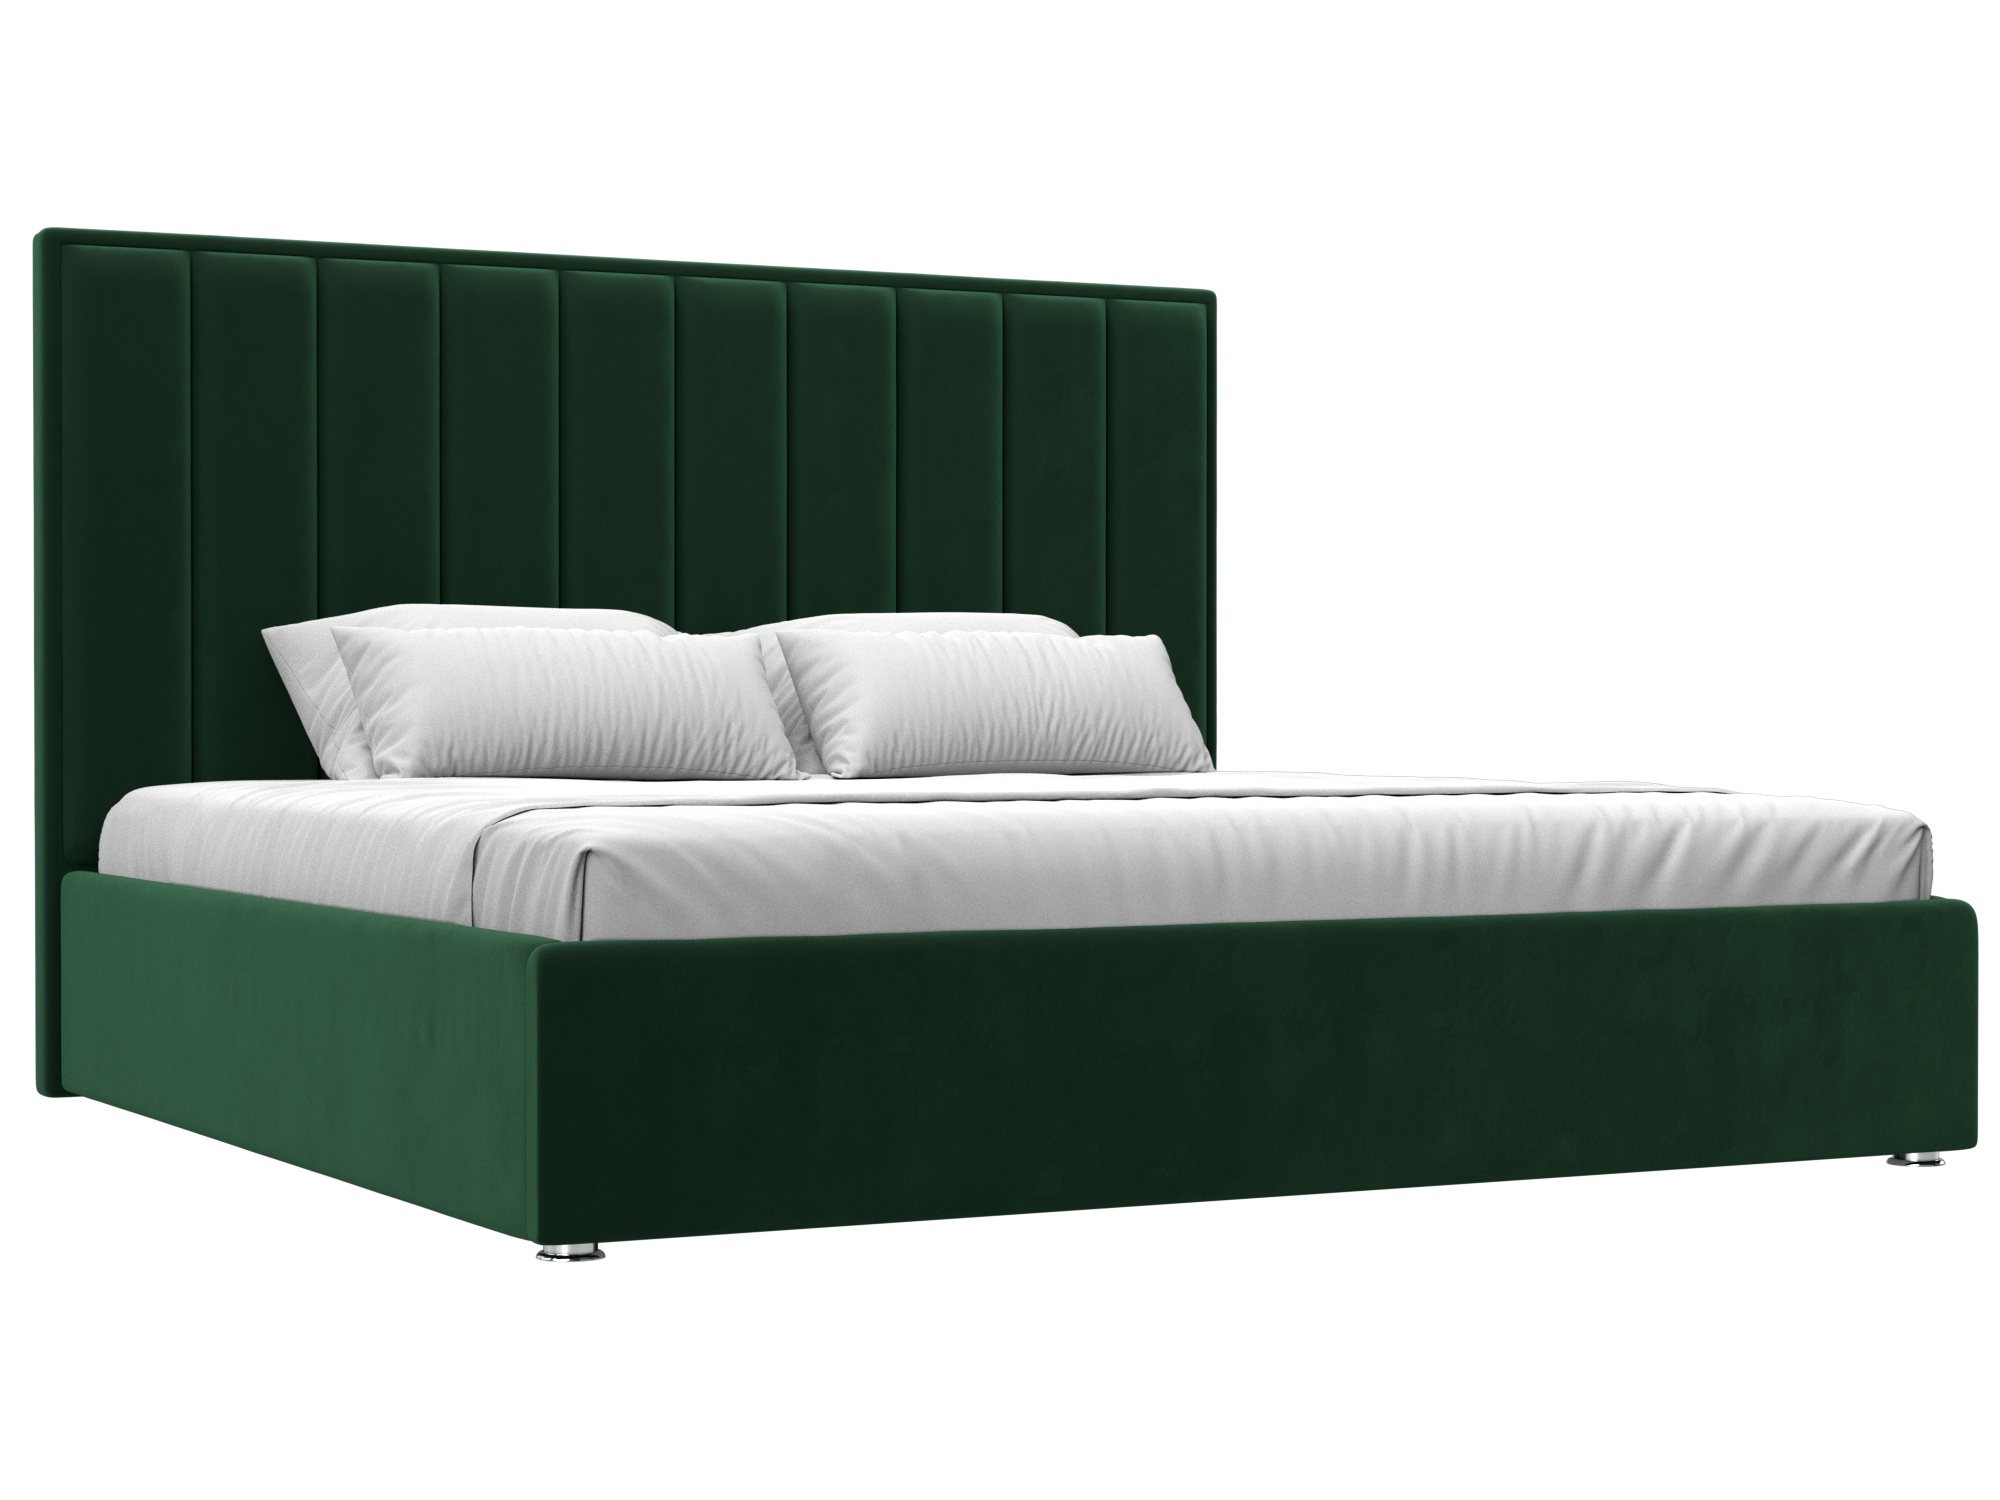 Кровать интерьерная Афродита 200 (зеленый)